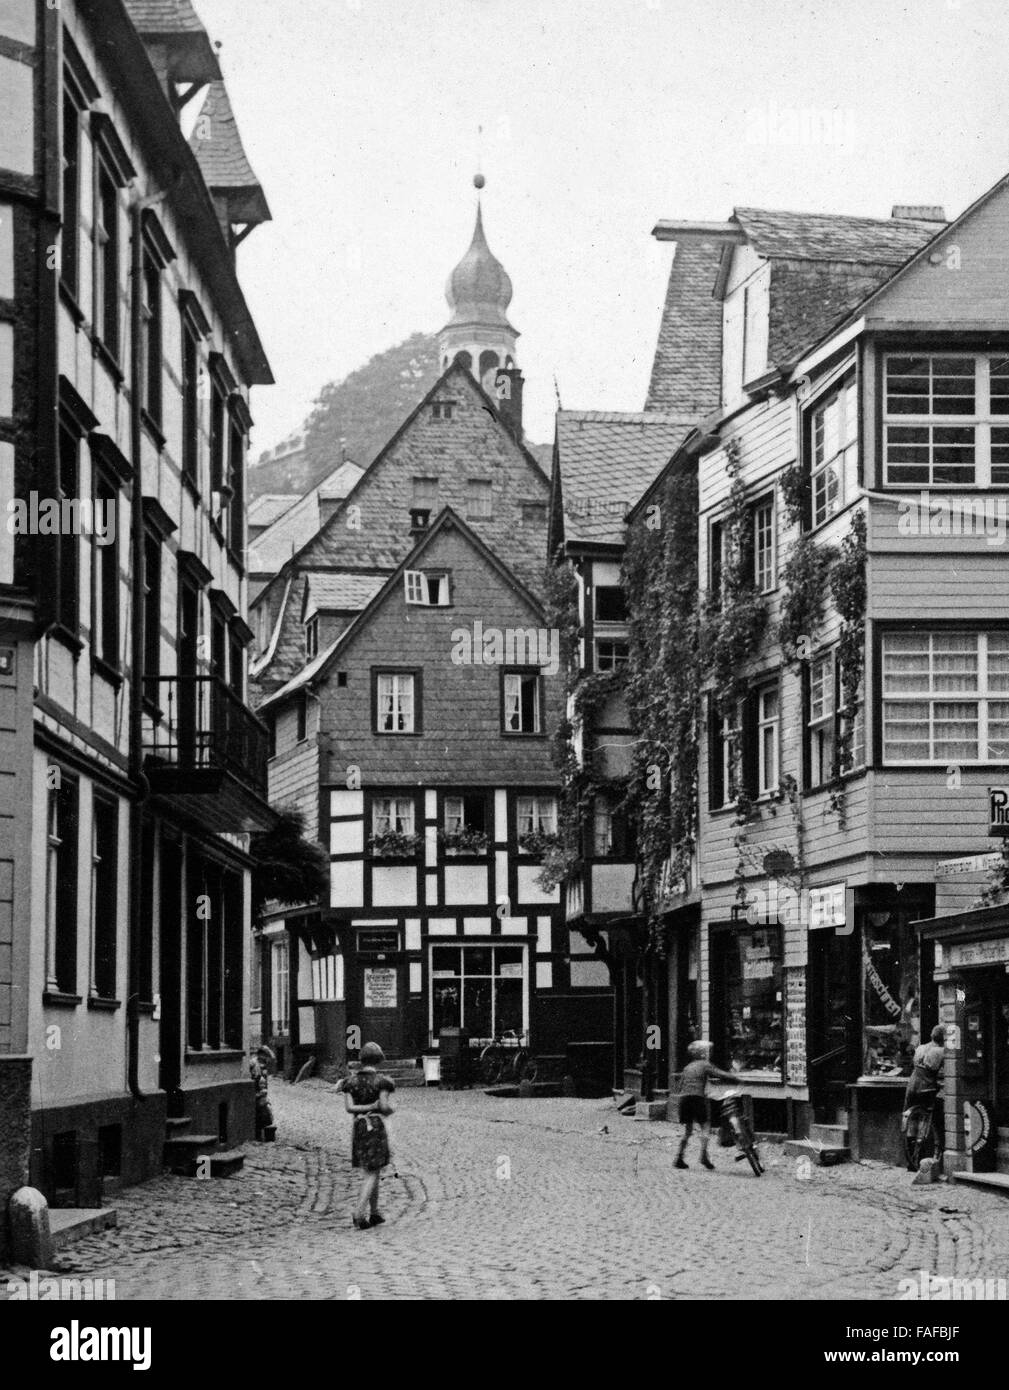 Blick in die Stadt Monschau an der Rur in der Eifel, Deutschland 1930er Jahre. Vista della citta' di Monschau al fiume Rur nell'area dell'Eifel, Germania 1930s. Foto Stock